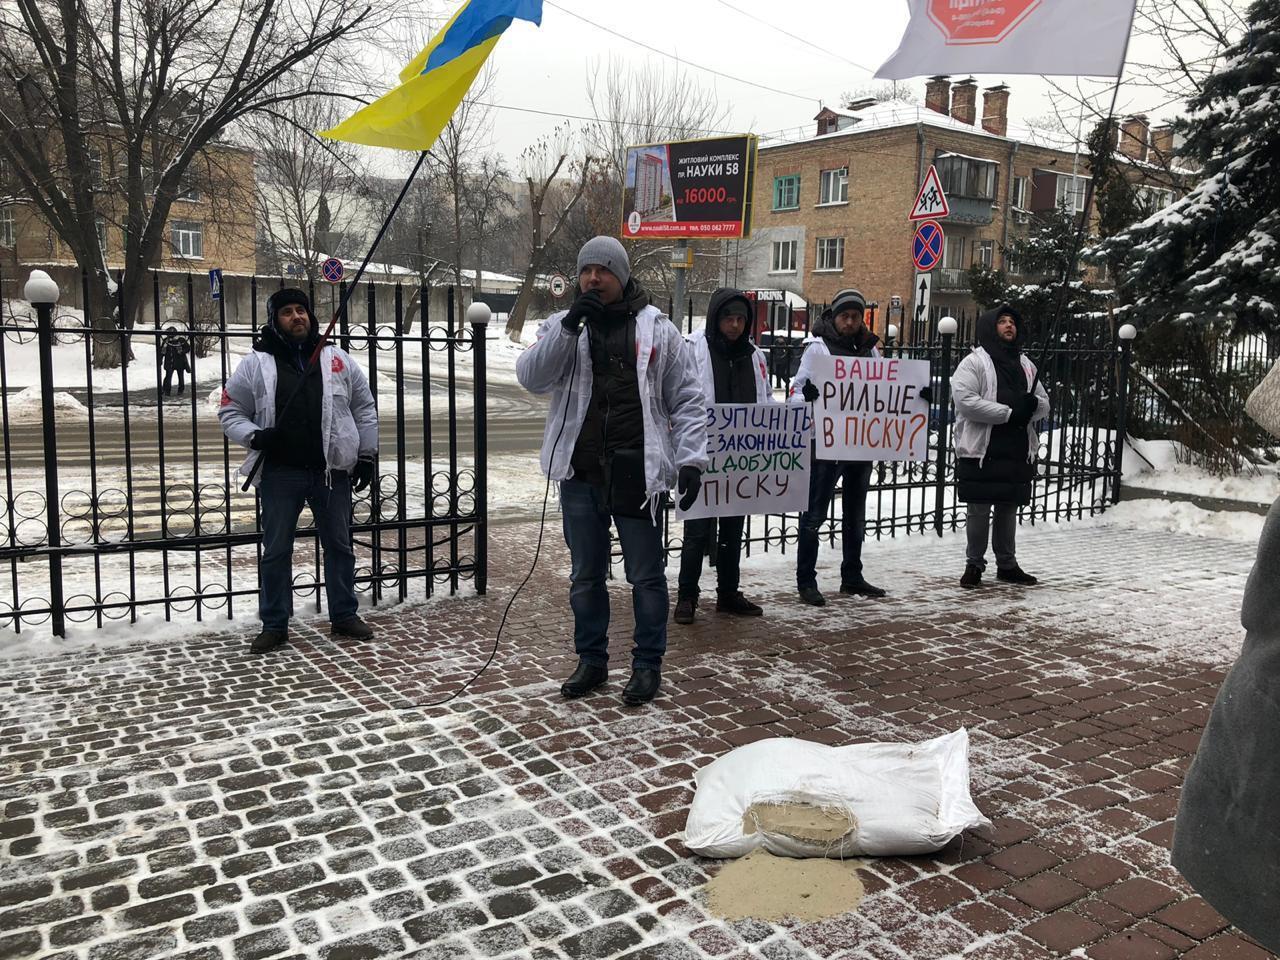 ''Ваше рильце в піску?'' - протест проти нелегального видобутку під поліцією Голосієва